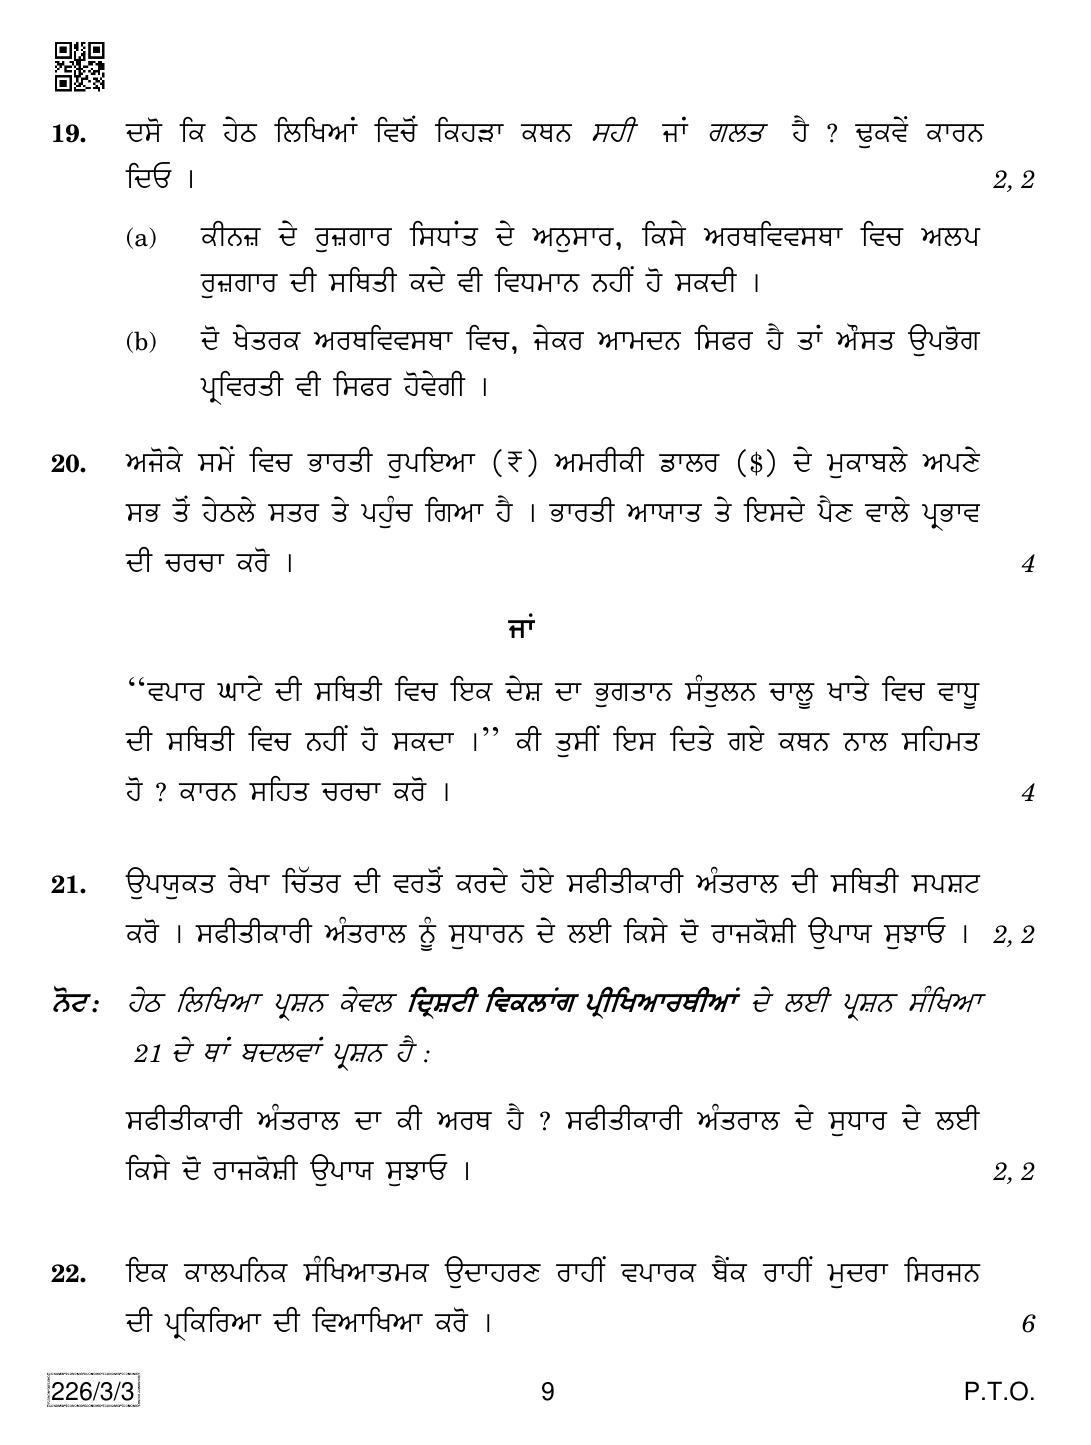 CBSE Class 12 226-3-3 Economics (Punjabi) 2019 Question Paper - Page 9